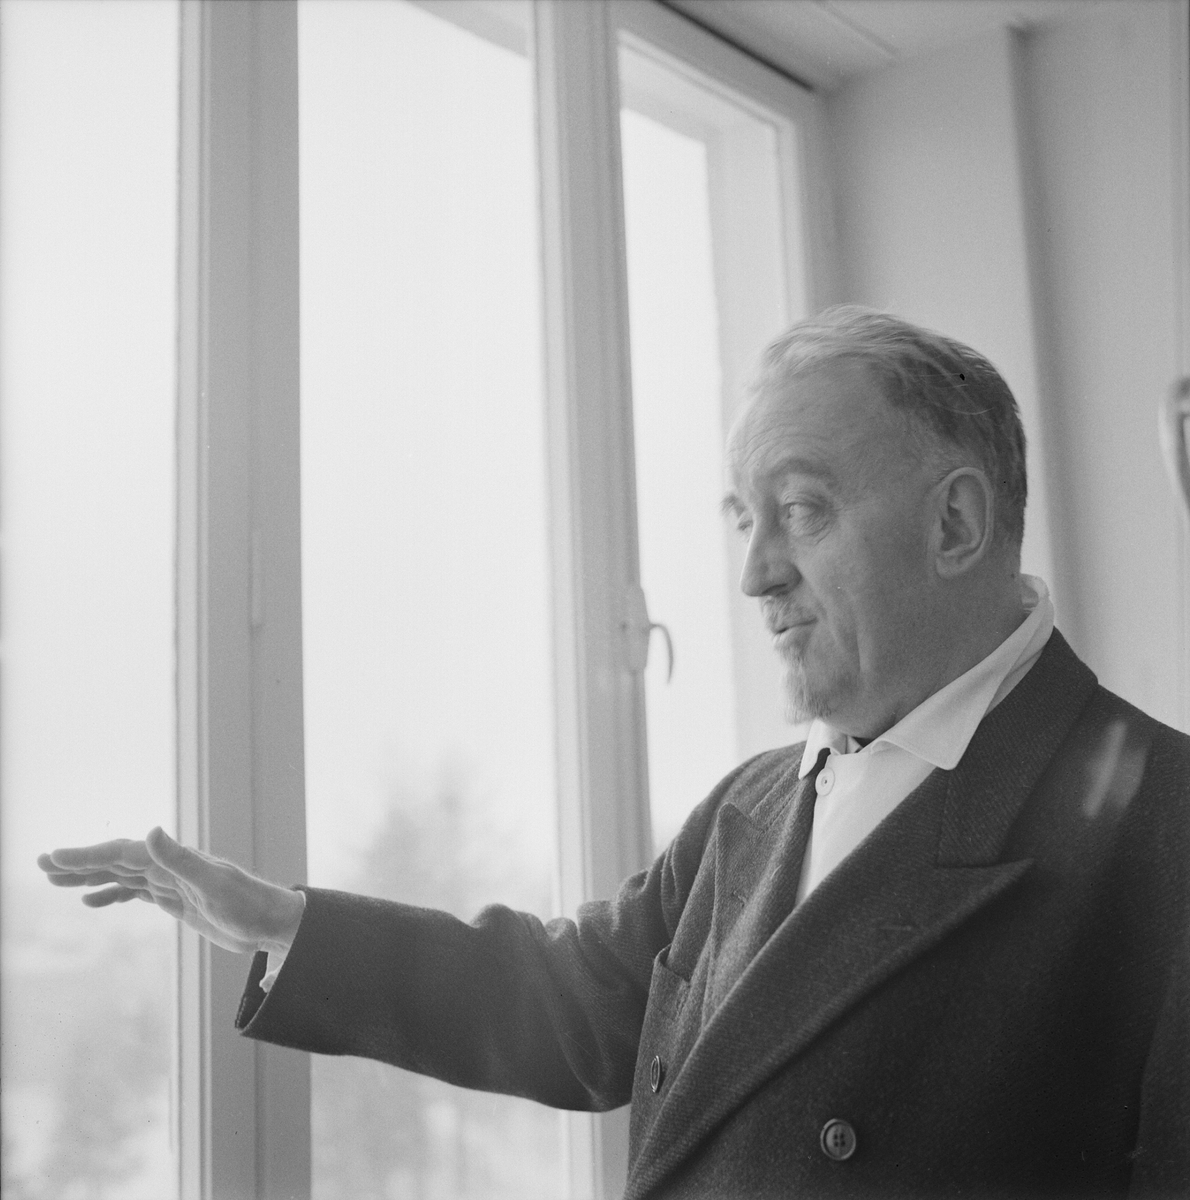 Akademiska sjukhuset, professor Ask-Uppmark i nya medicinska kliniken, Uppsala, februari 1962